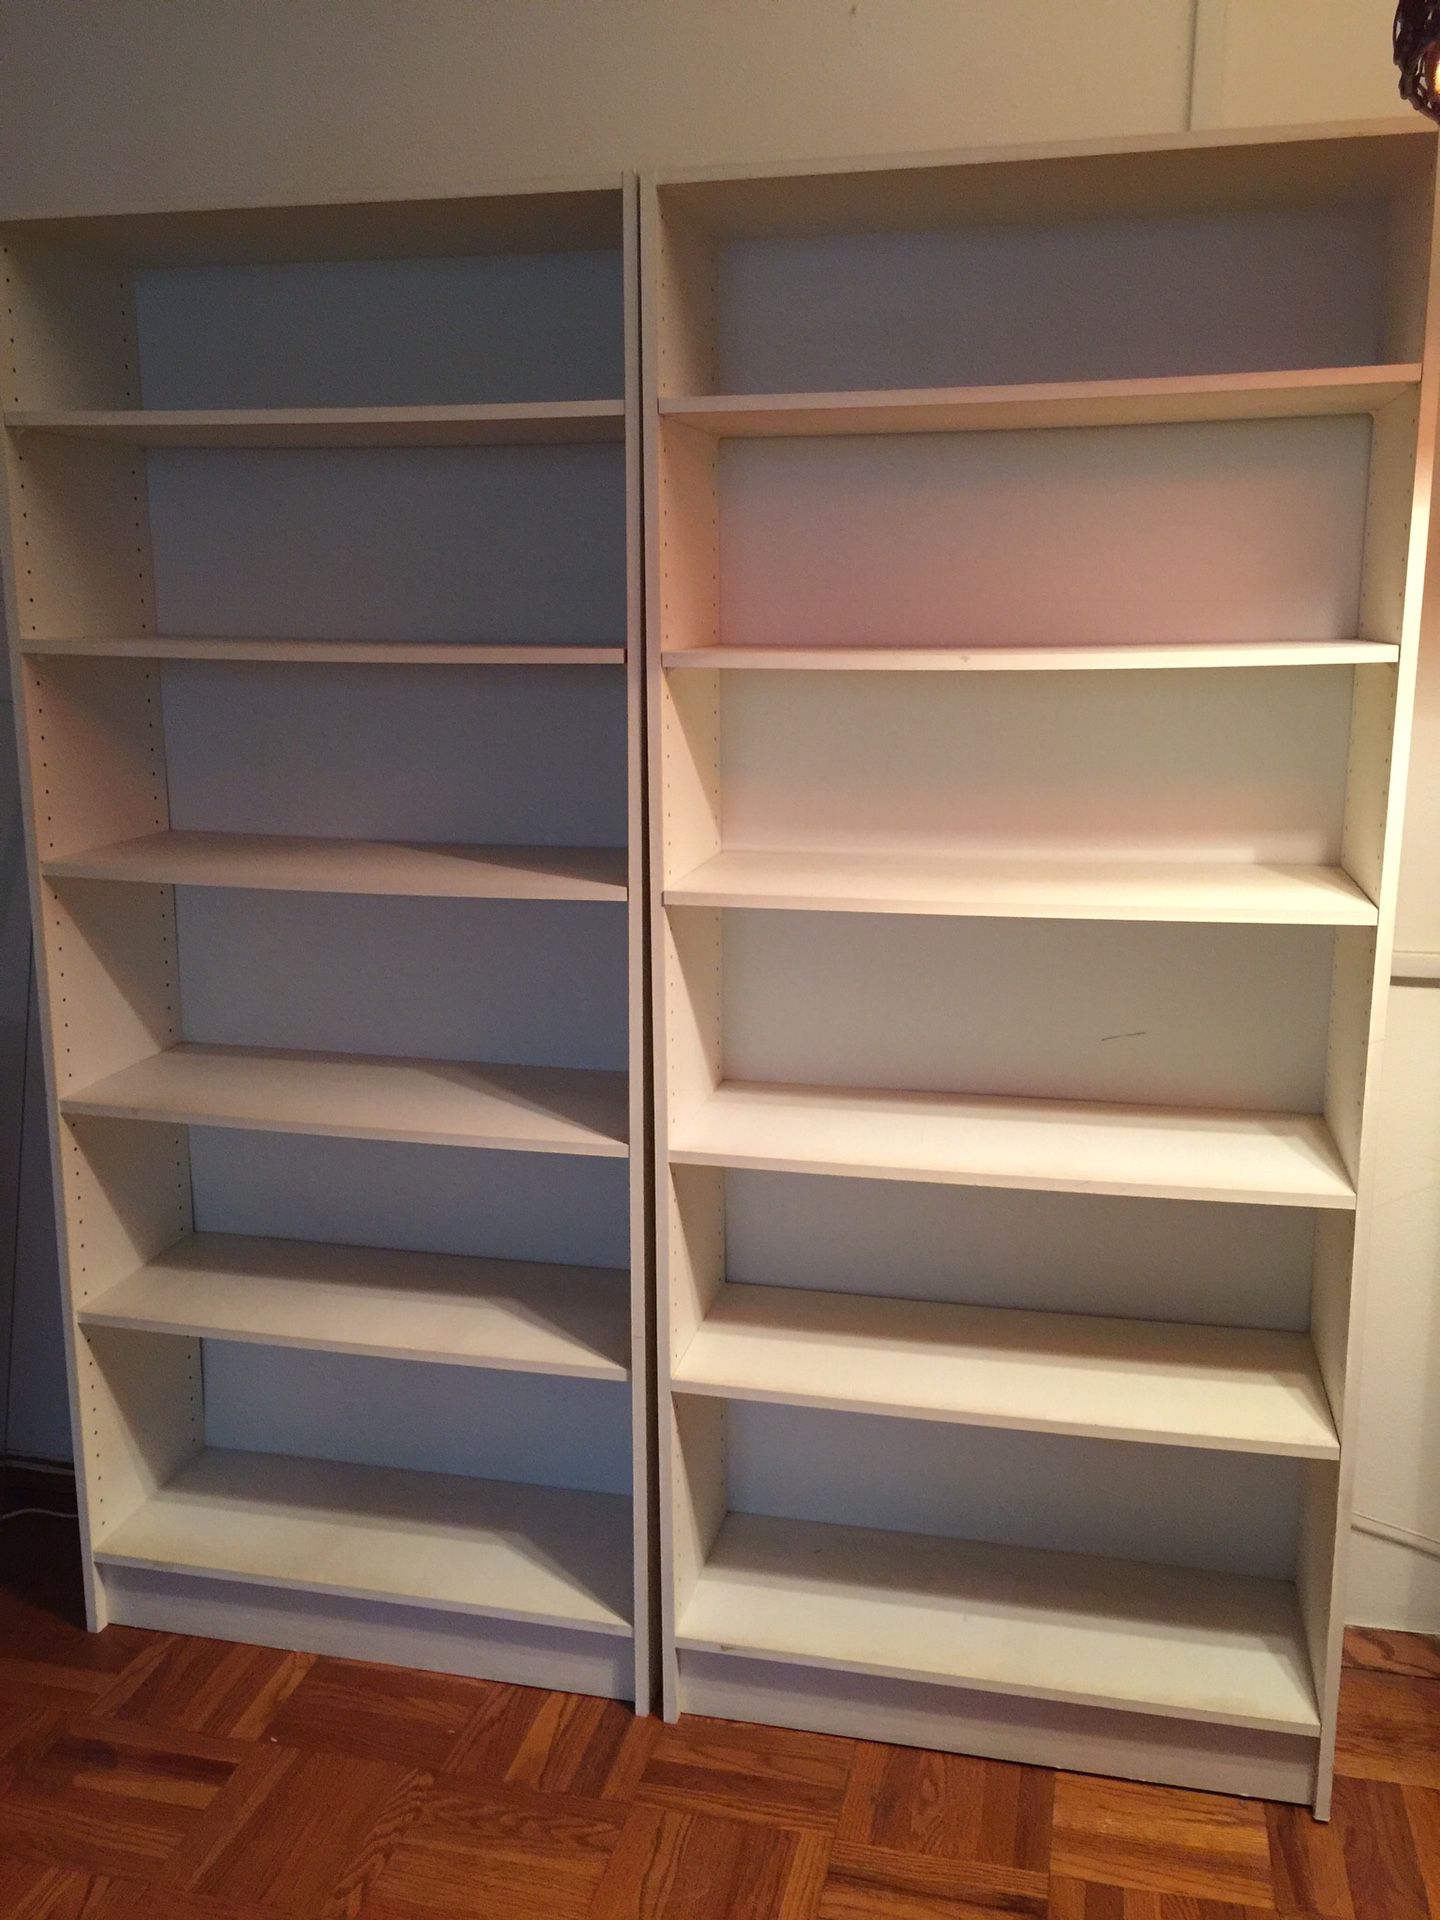 4left - bookshelves - Take one or all